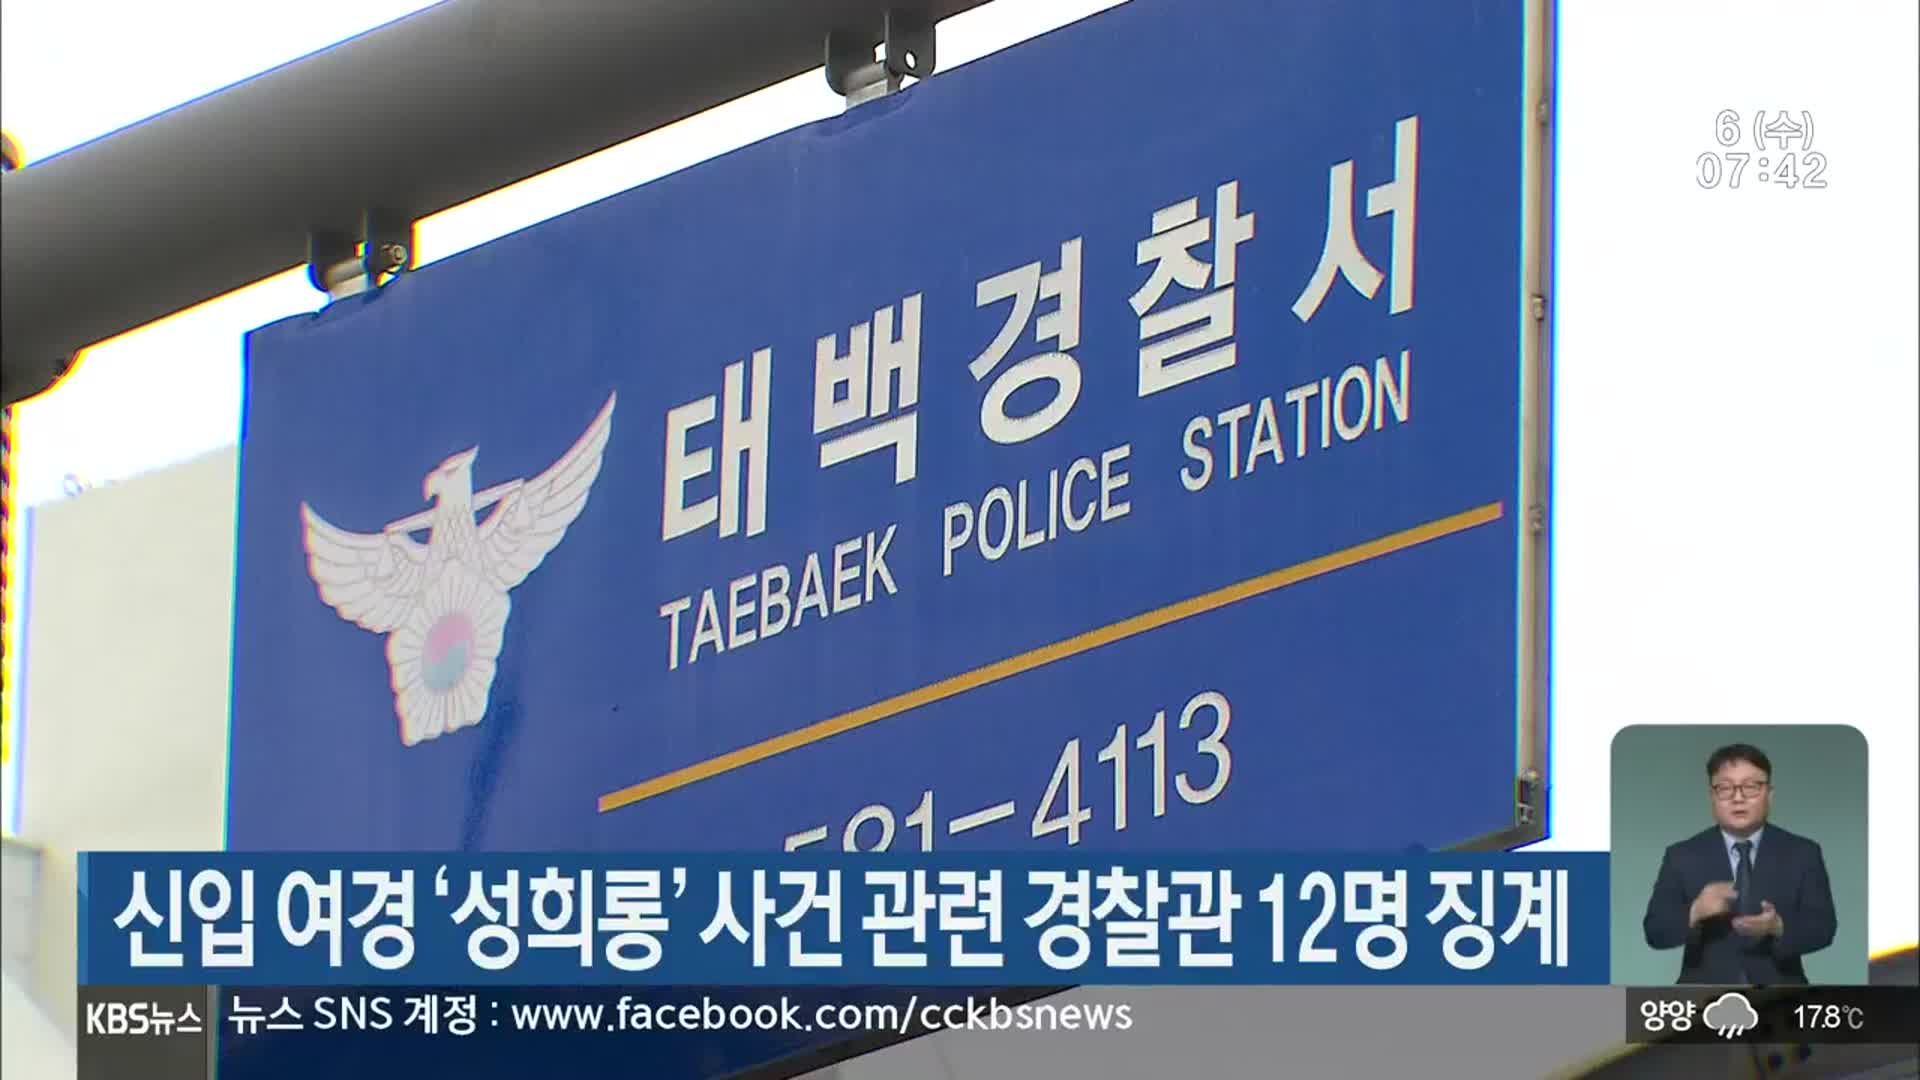 신입 여경 ‘성희롱’ 사건 관련 경찰관 12명 징계